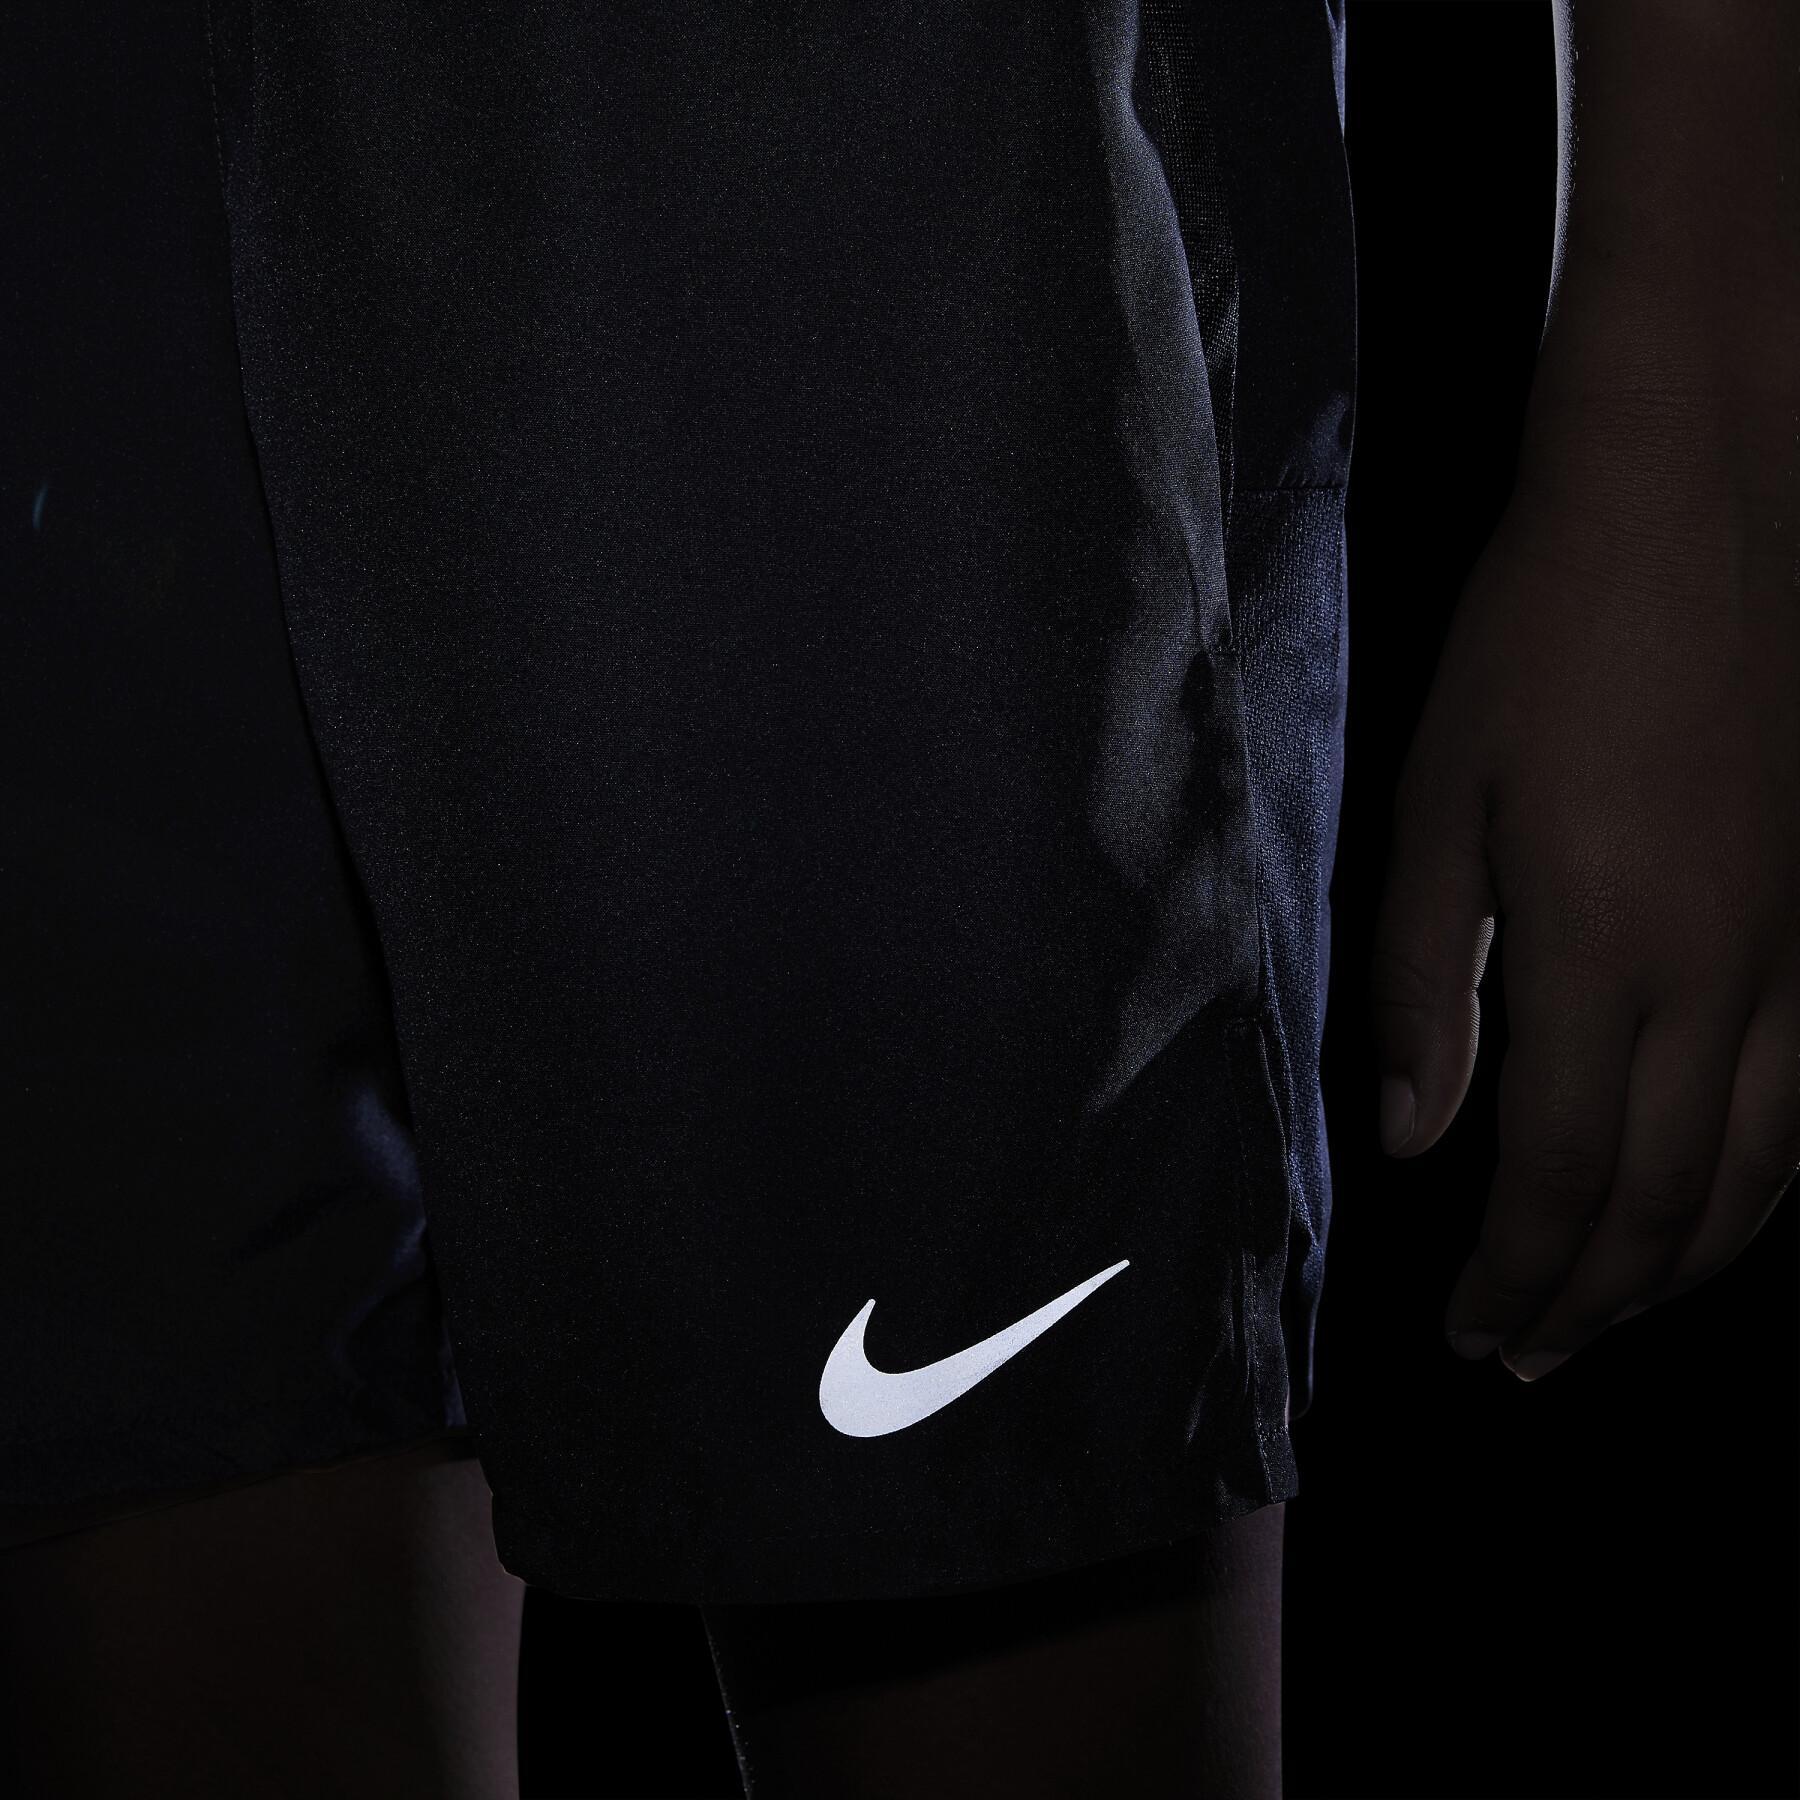 Shorts für Kinder Nike Challenger